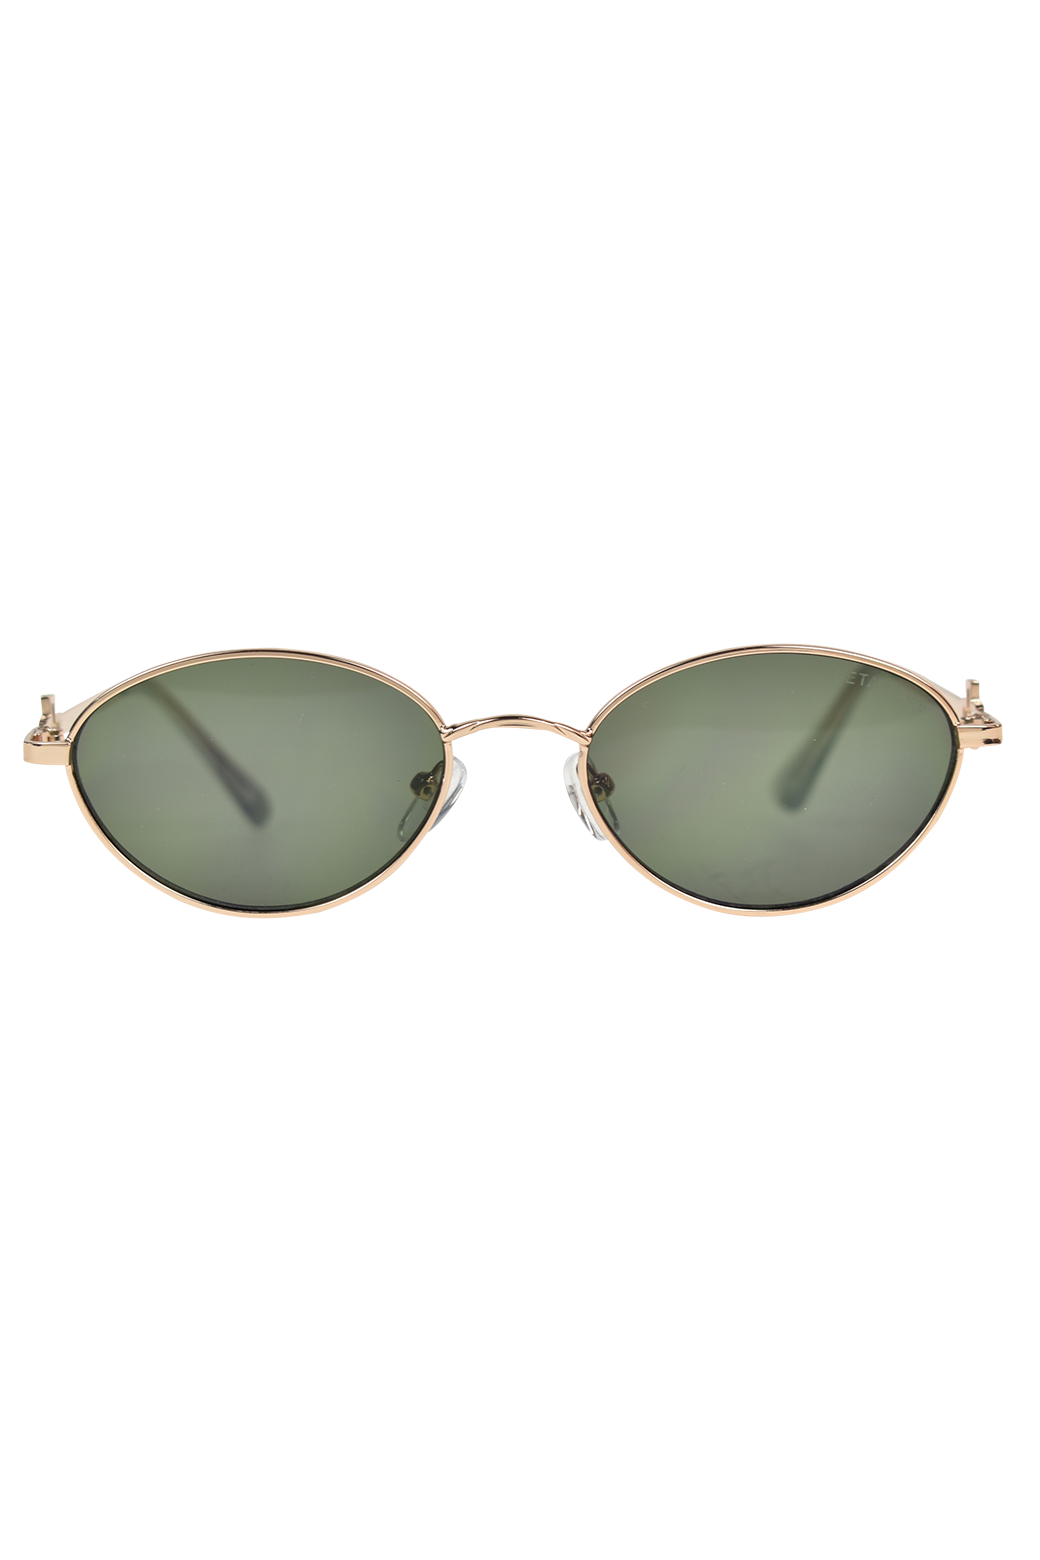 Peta + Jain Calista Sunglasses Green